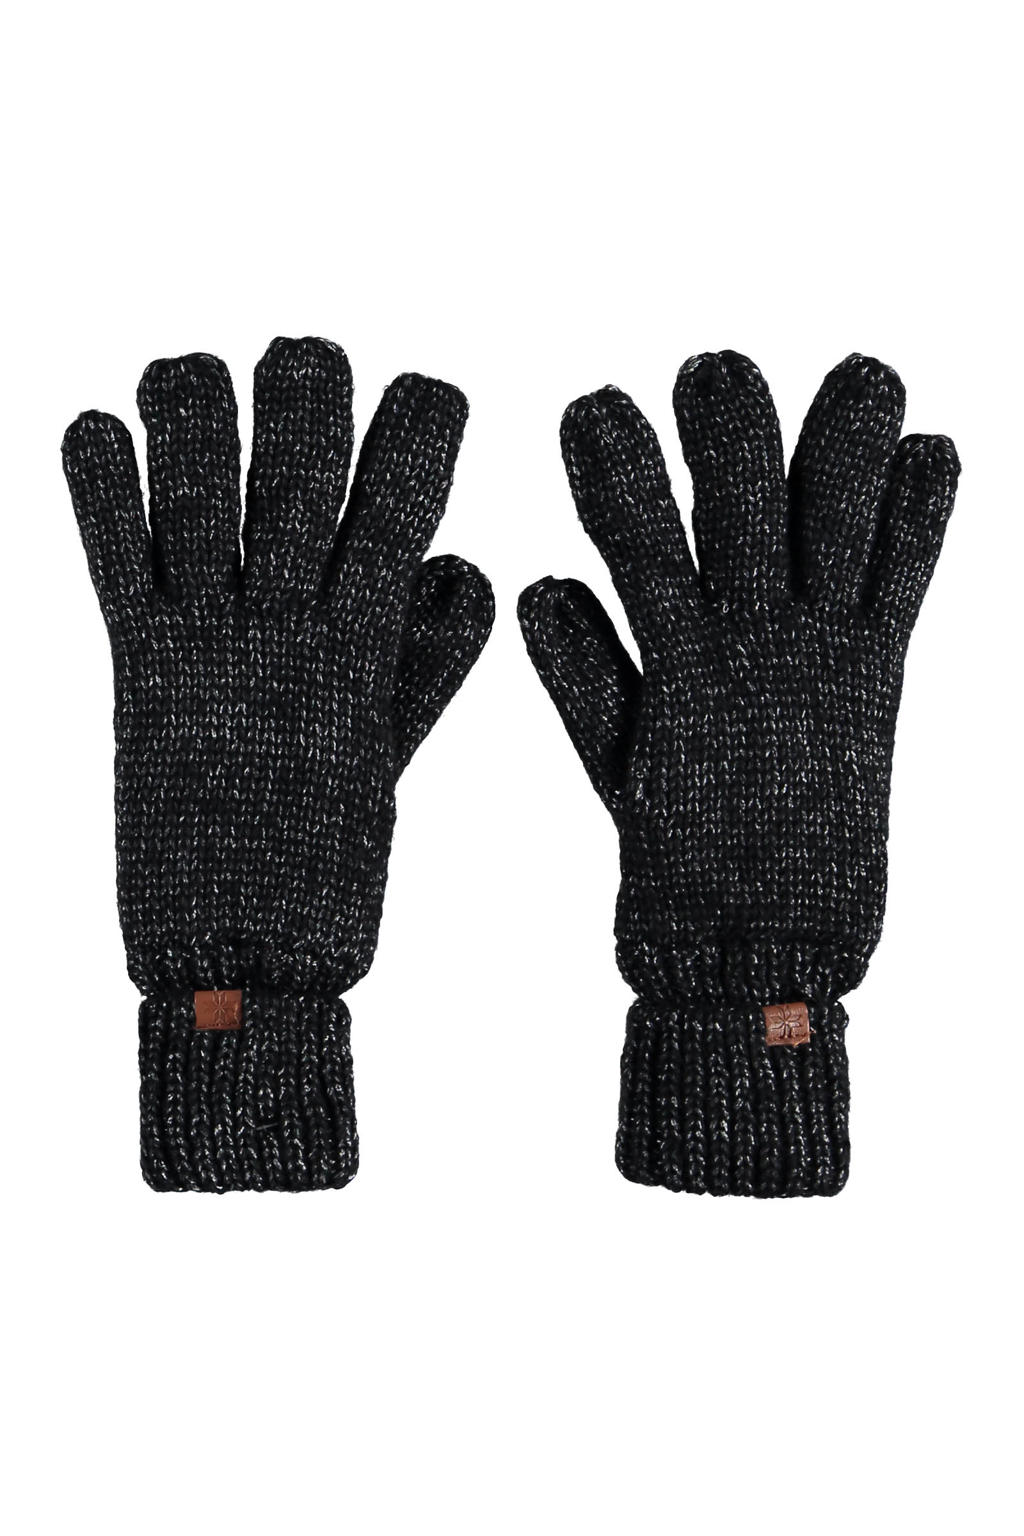 Sarlini handschoenen gemeleerd zwart